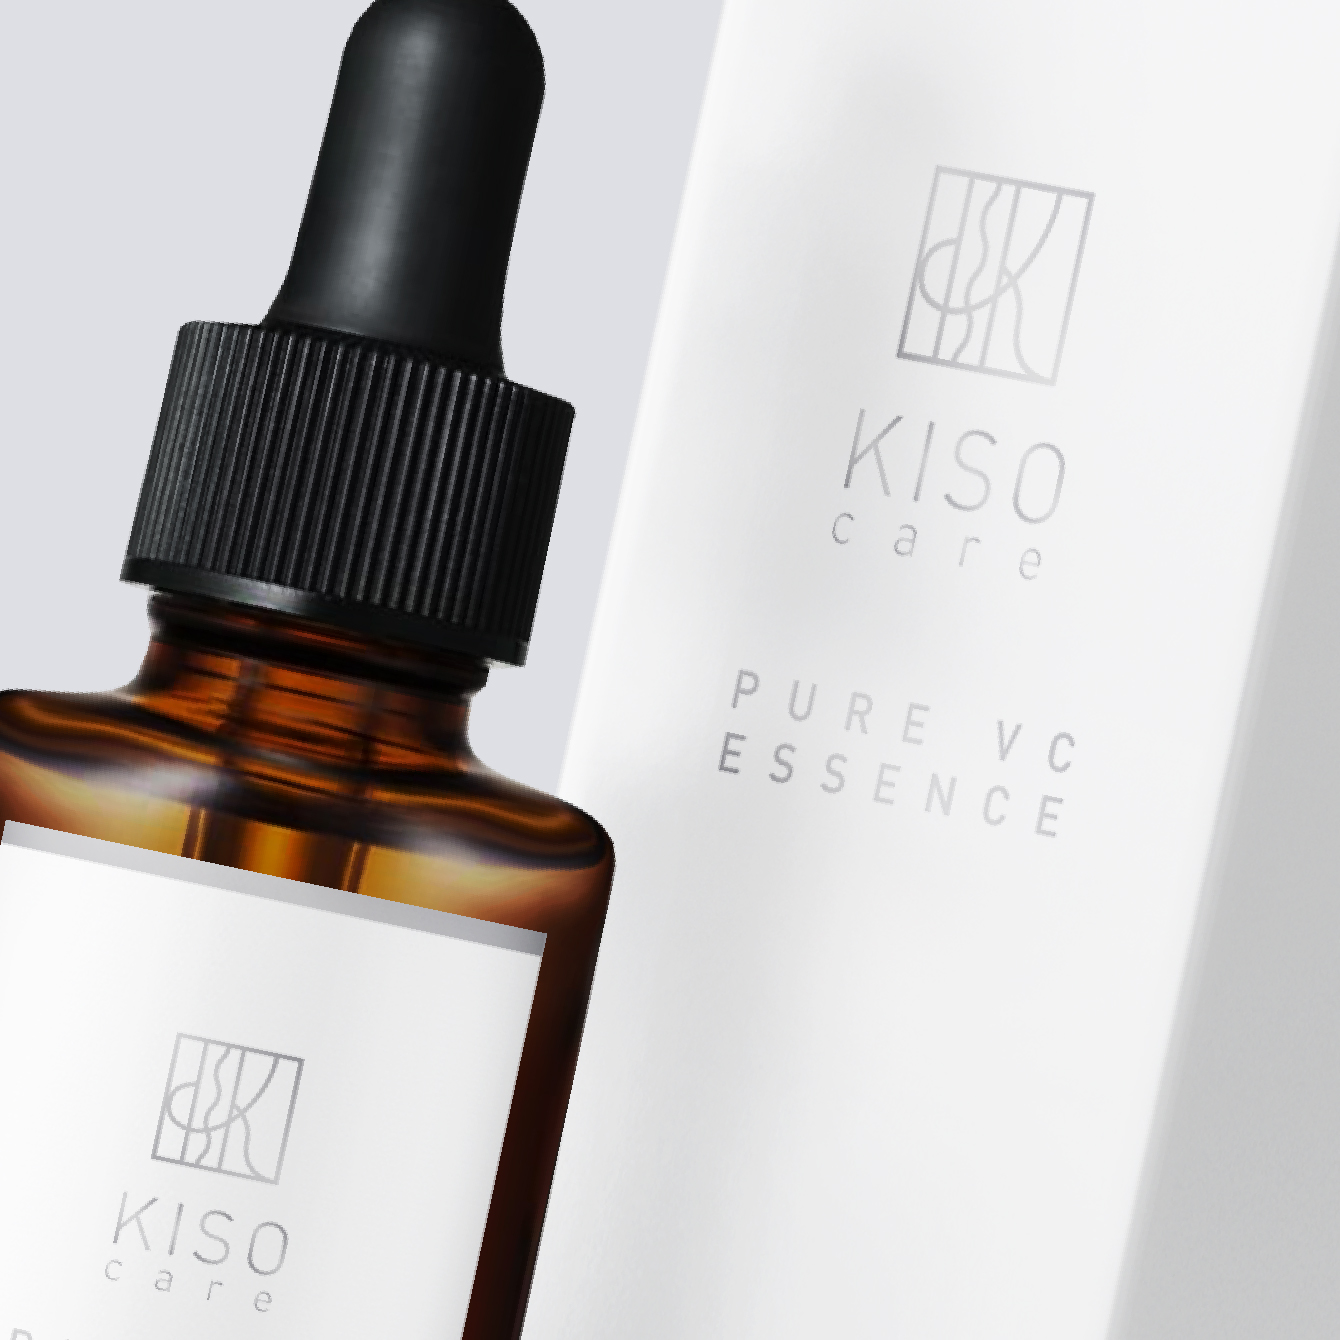 基礎化粧品研究所 様KISO care美容液パッケージ・ラベルデザイン制作